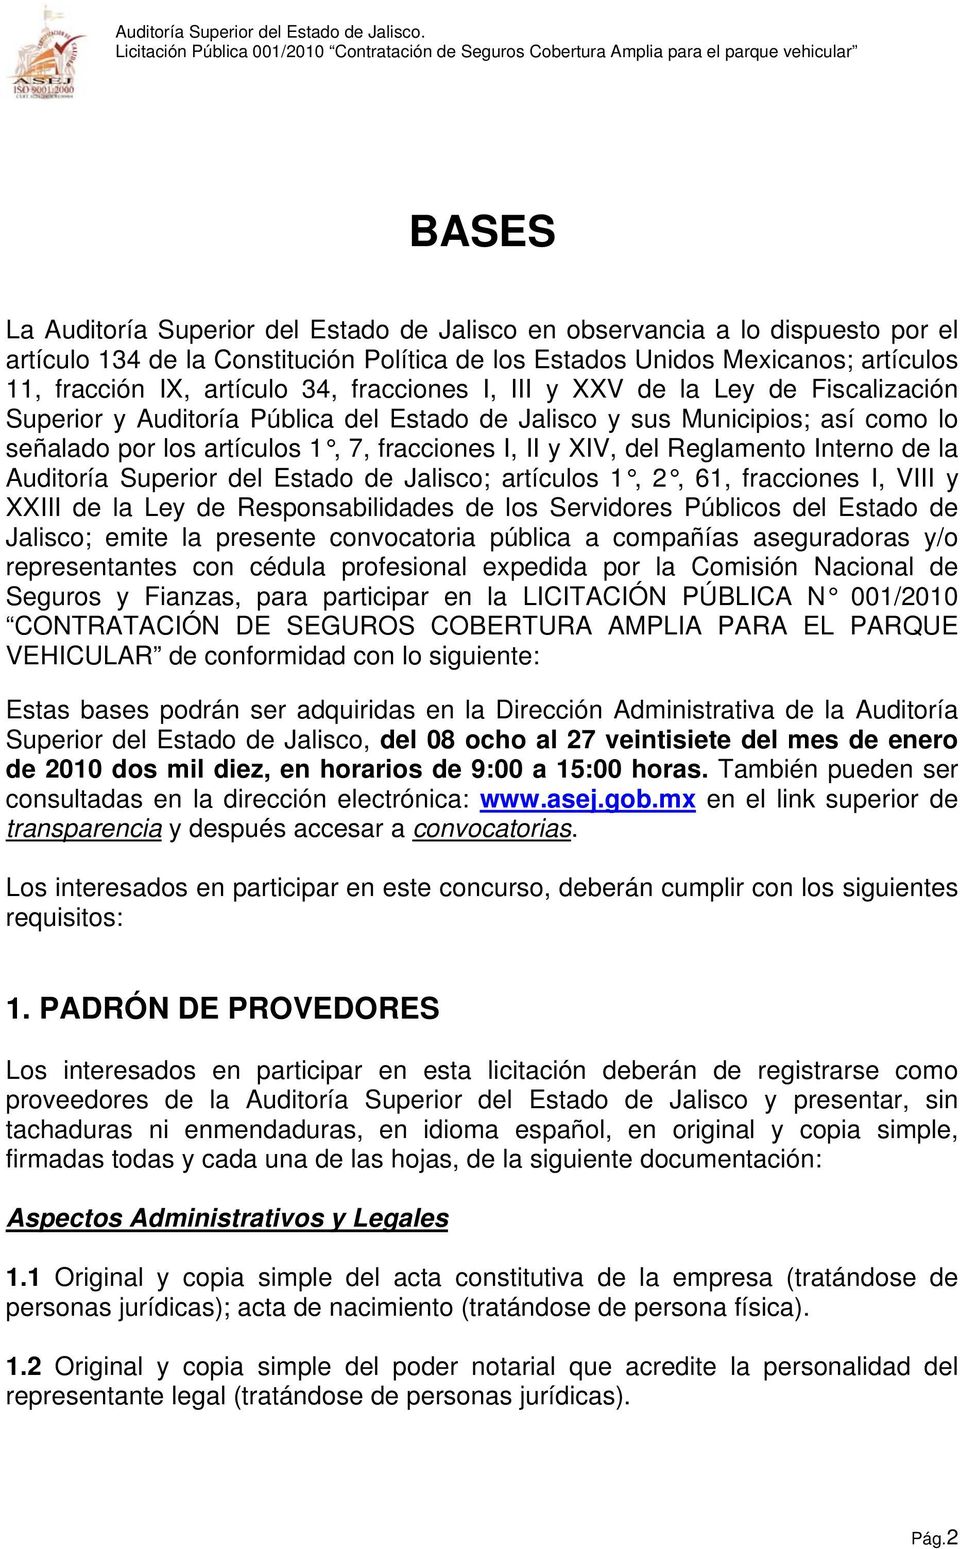 Reglamento Interno de la Auditoría Superior del Estado de Jalisco; artículos 1, 2, 61, fracciones I, VIII y XXIII de la Ley de Responsabilidades de los Servidores Públicos del Estado de Jalisco;